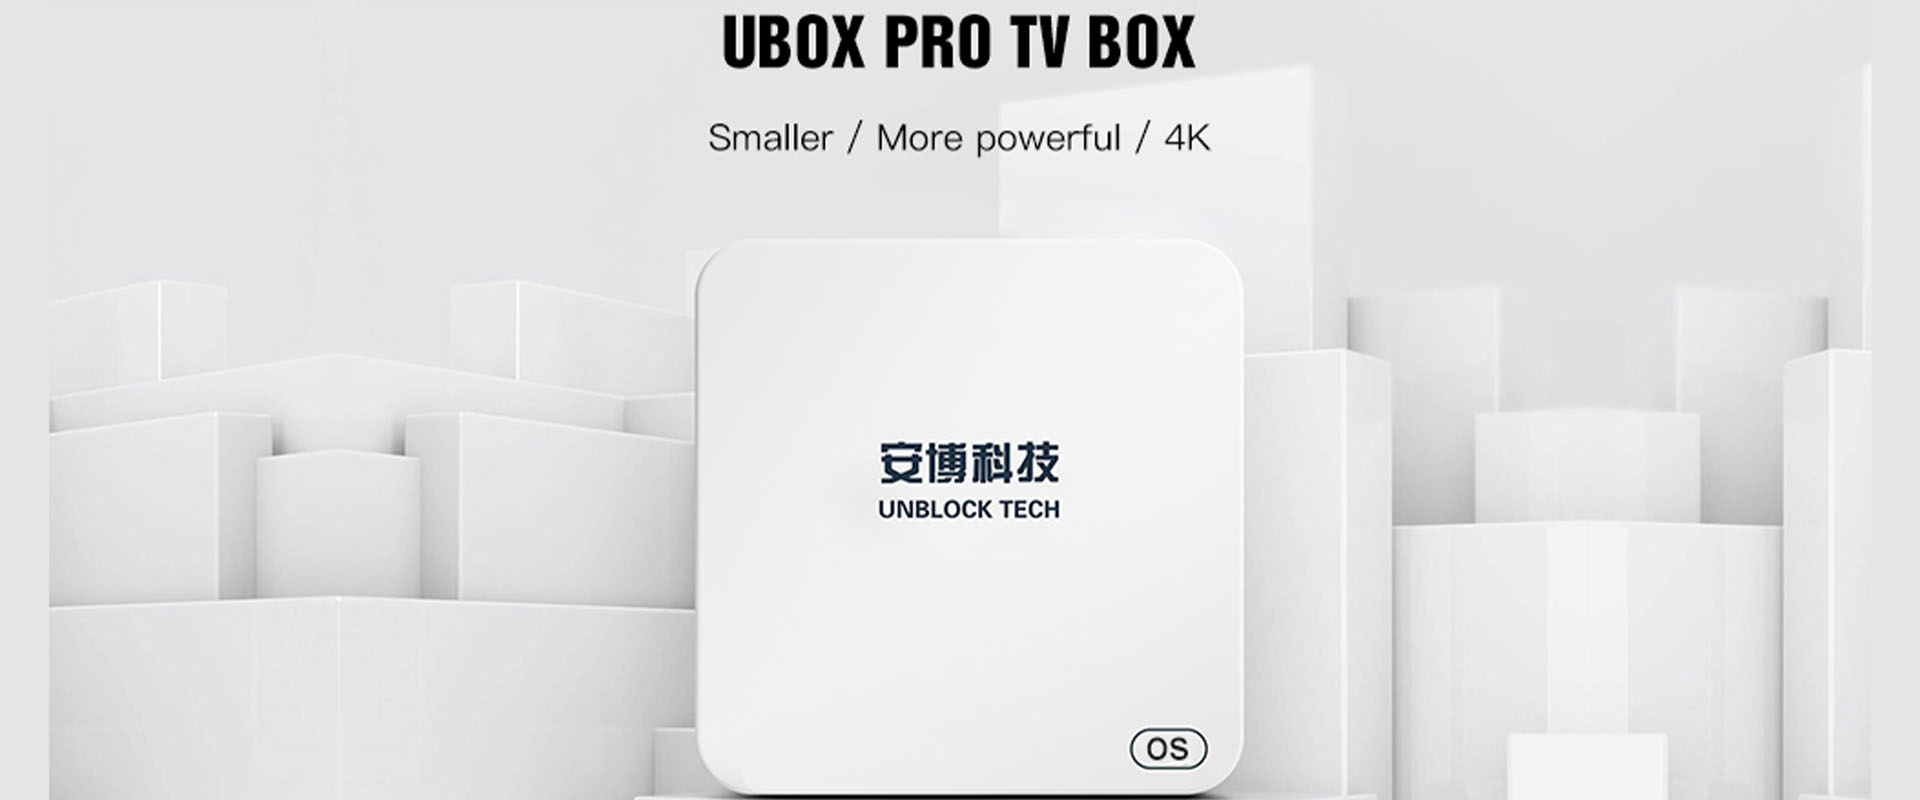 Ubox5 Pro TV Box - Phiên bản mới nhất của công nghệ UBOX Gen 5 Pro Max